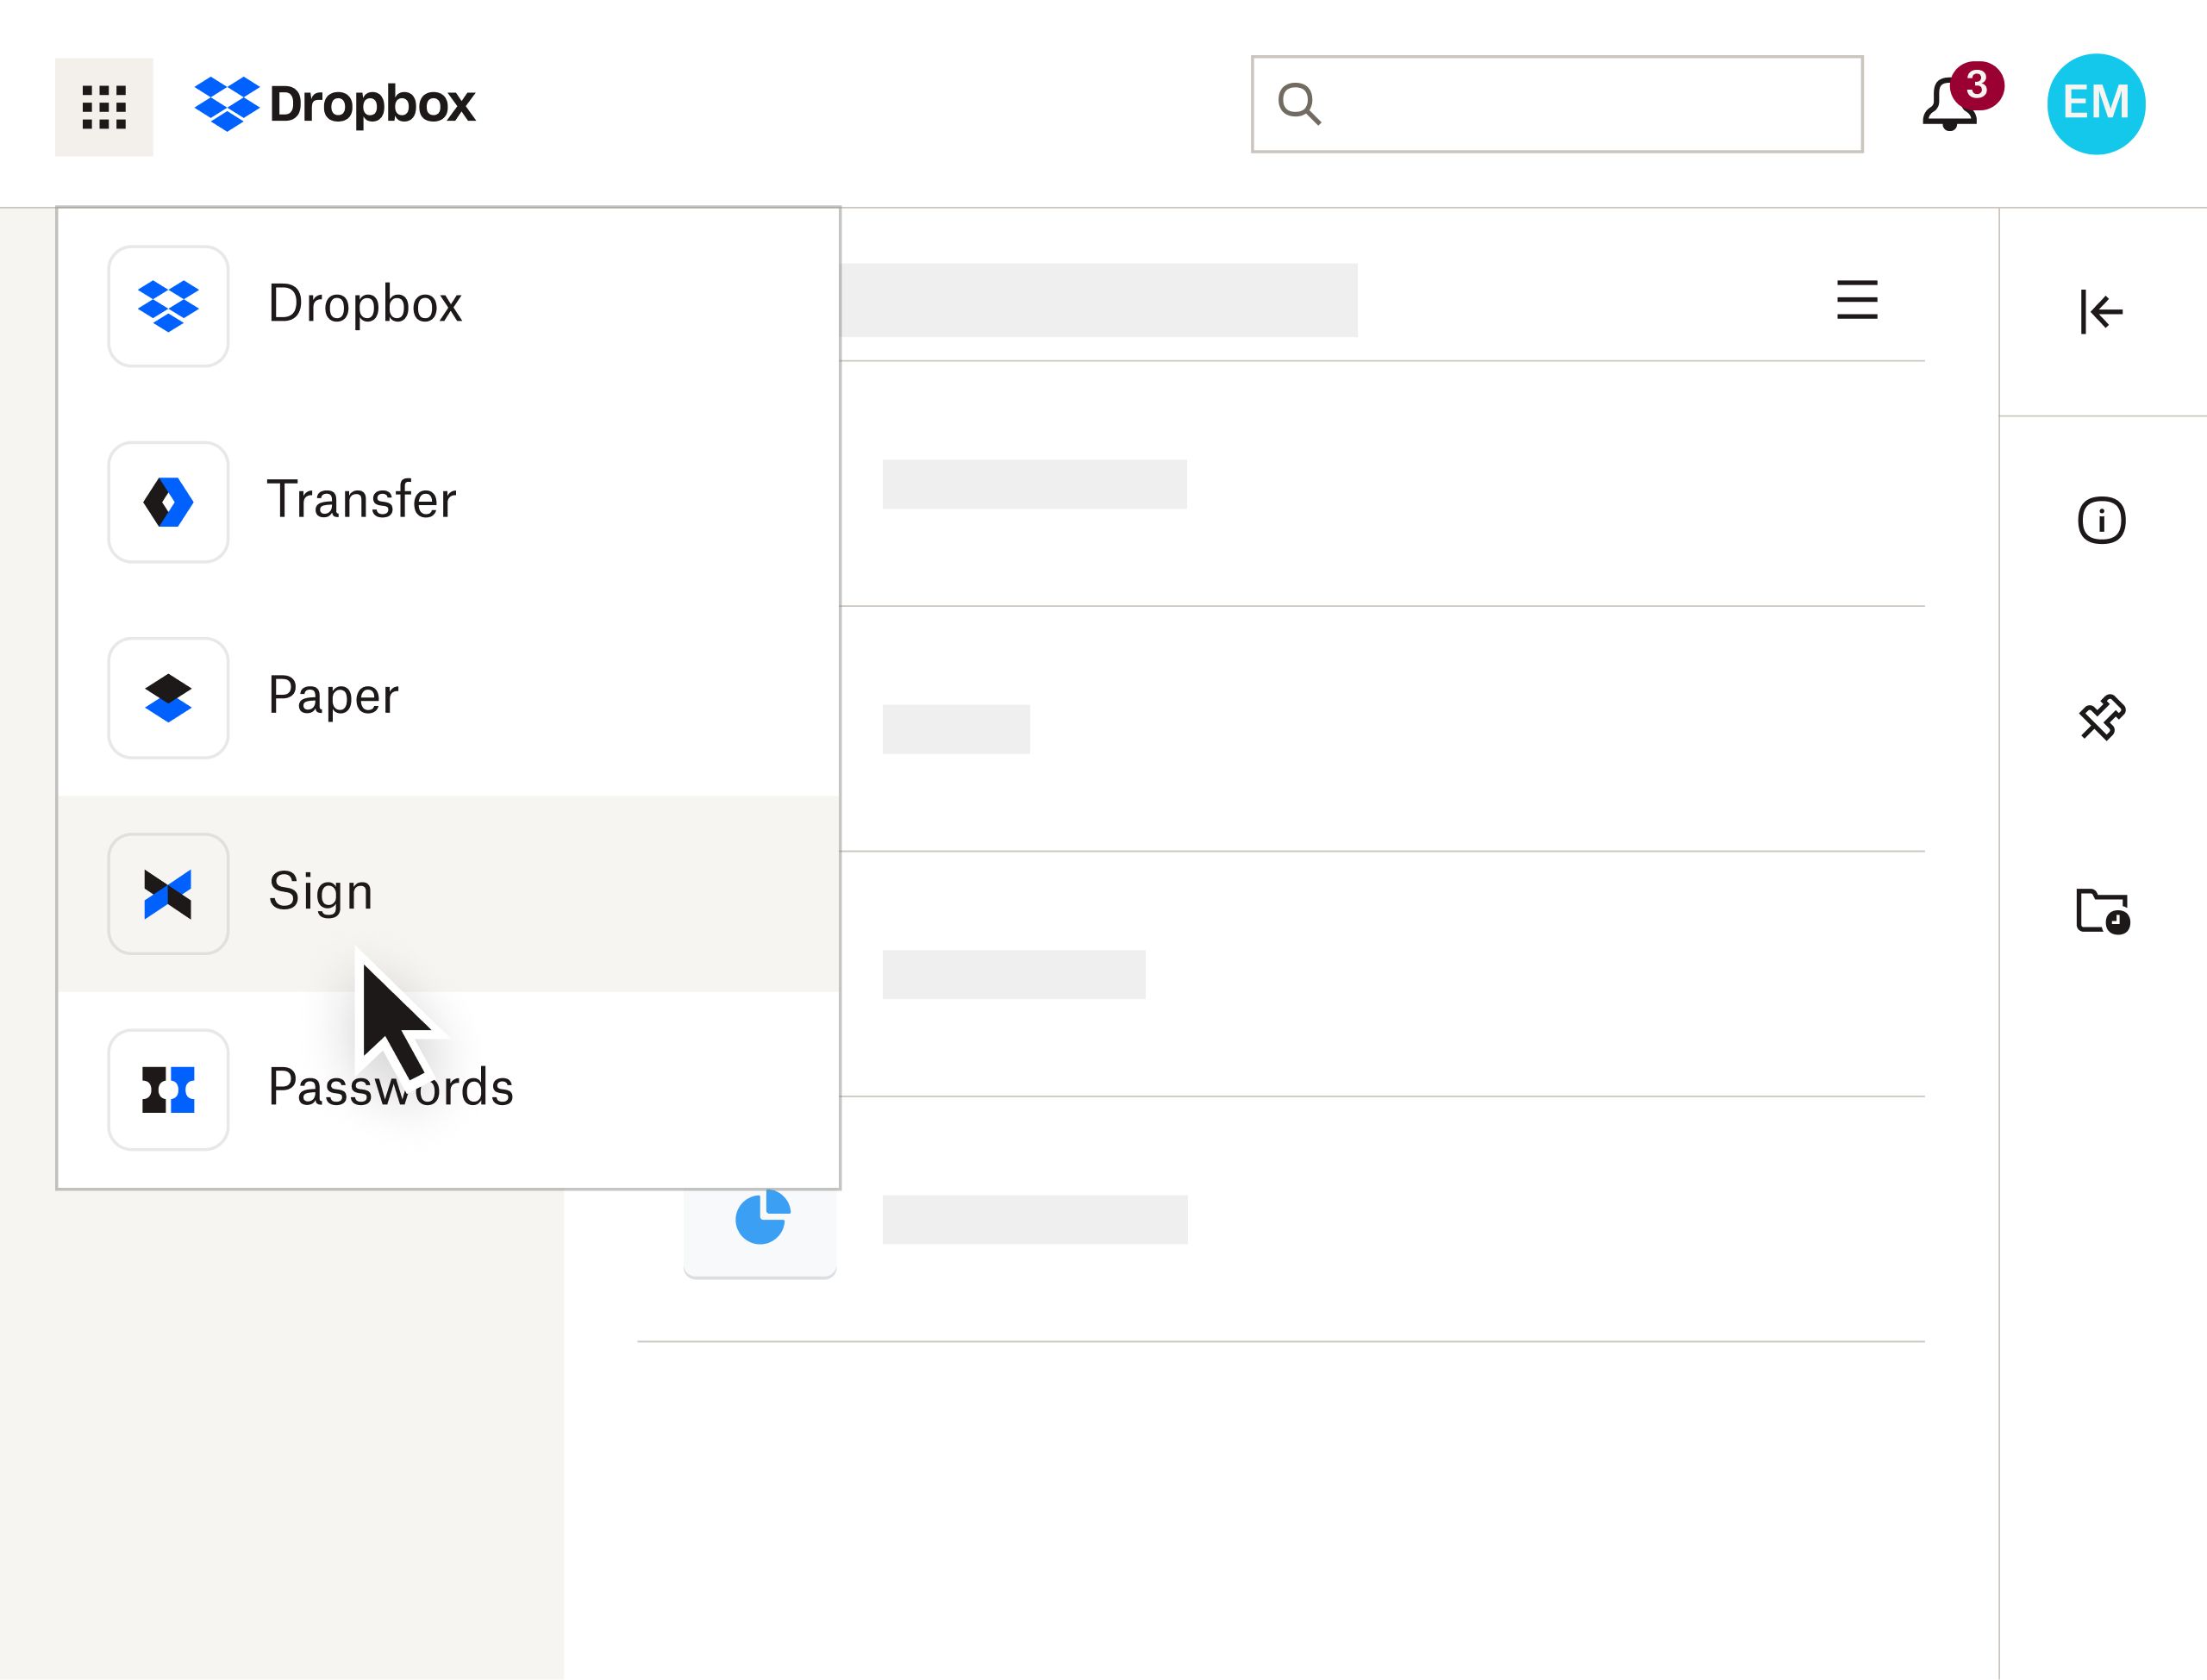 Sélection de l'option “Sign” dans le menu déroulant de produits de l'interface Dropbox